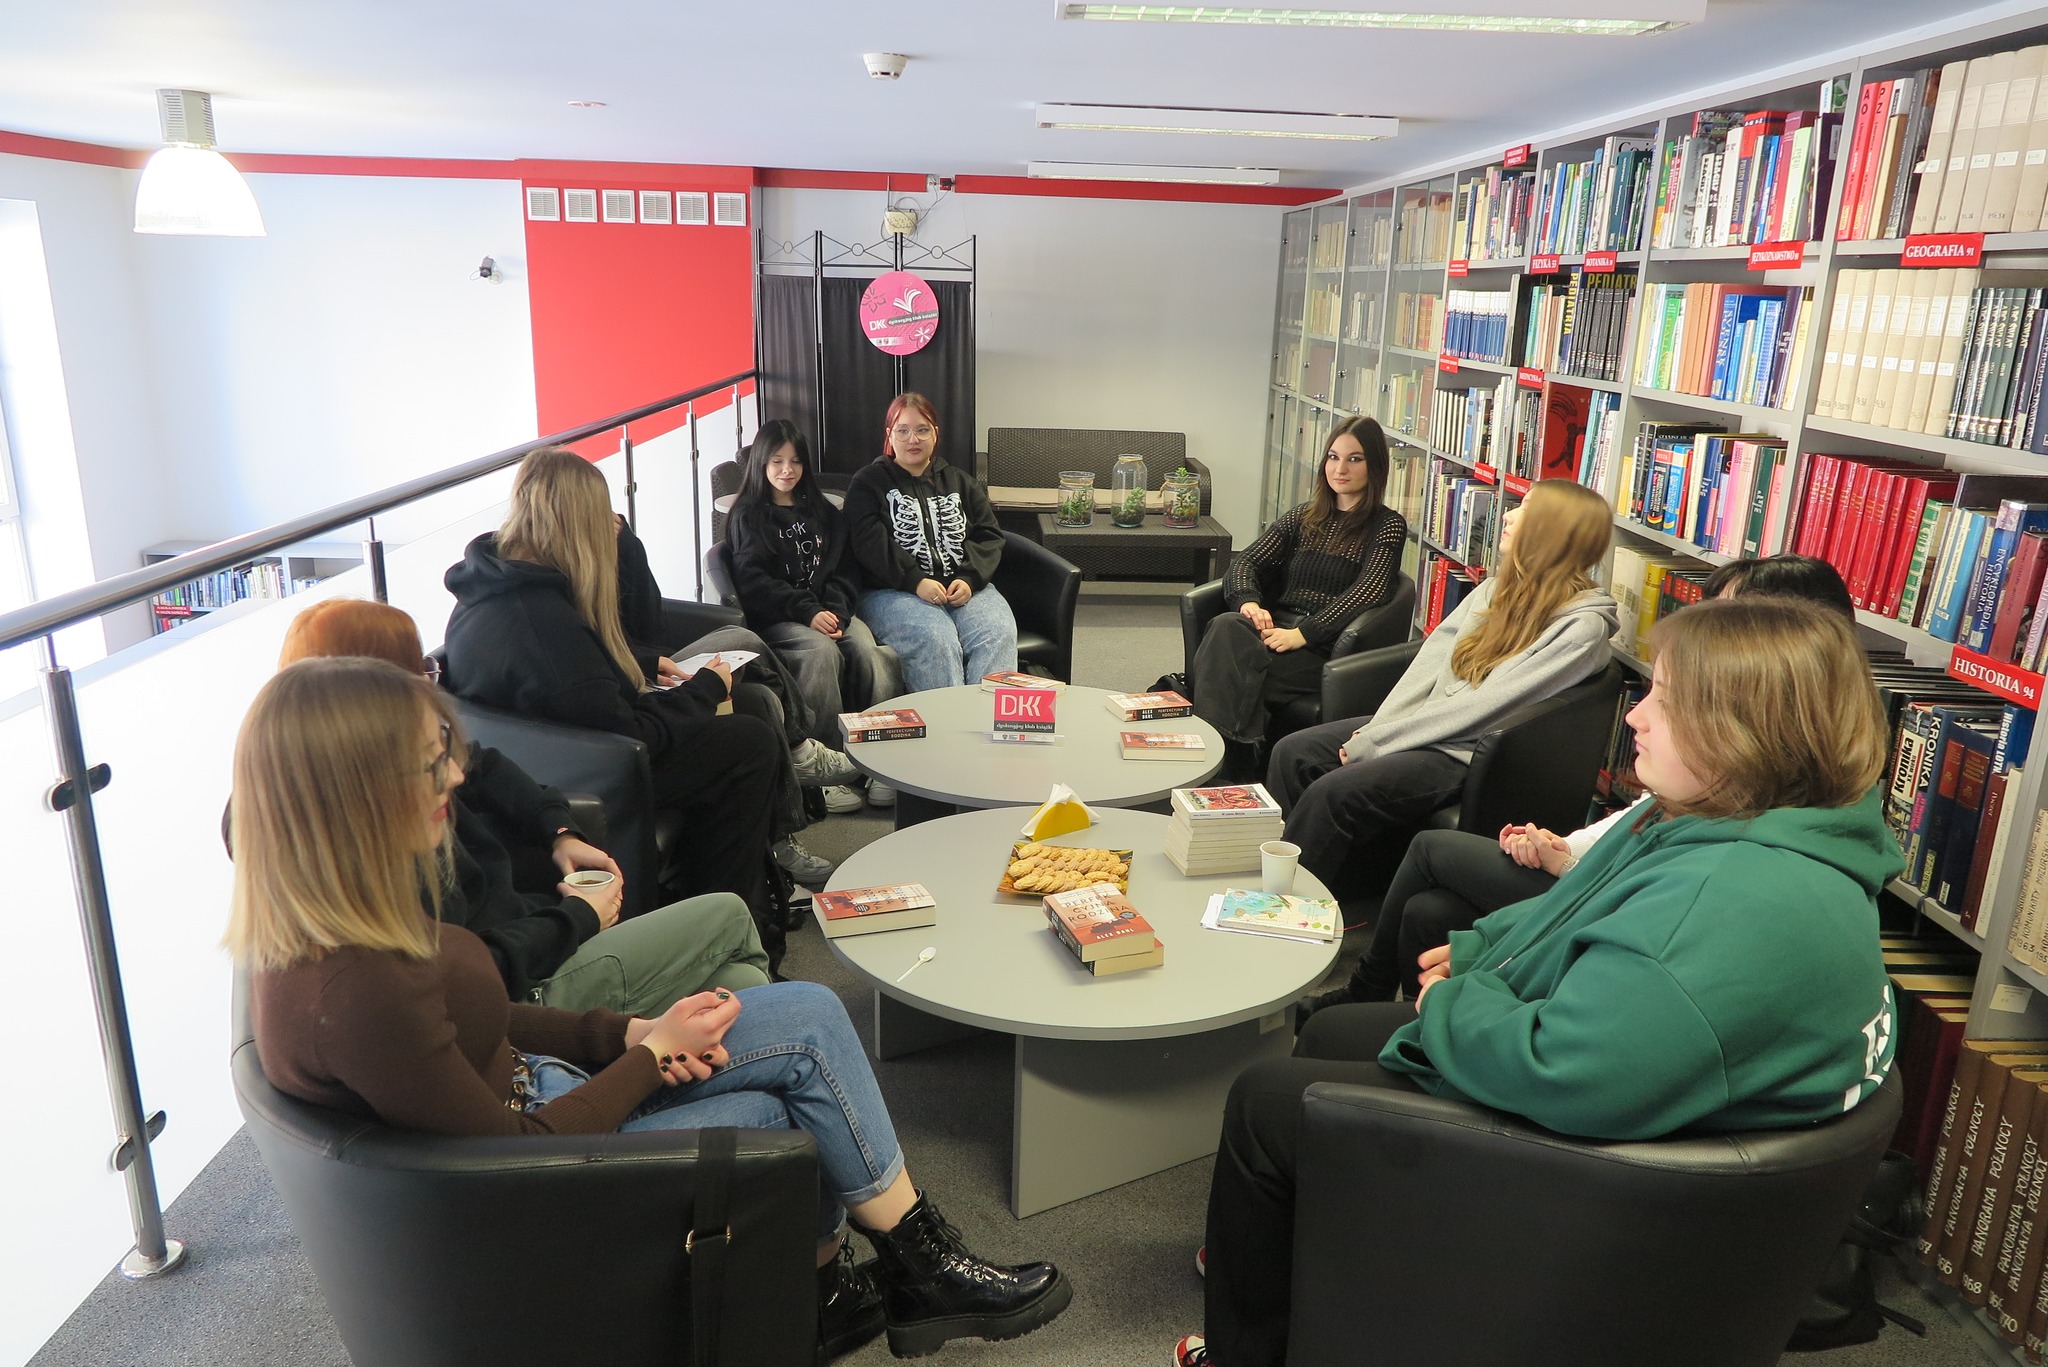 członkowie klubu DKK z malinowa podczas spotkania w bibliotece